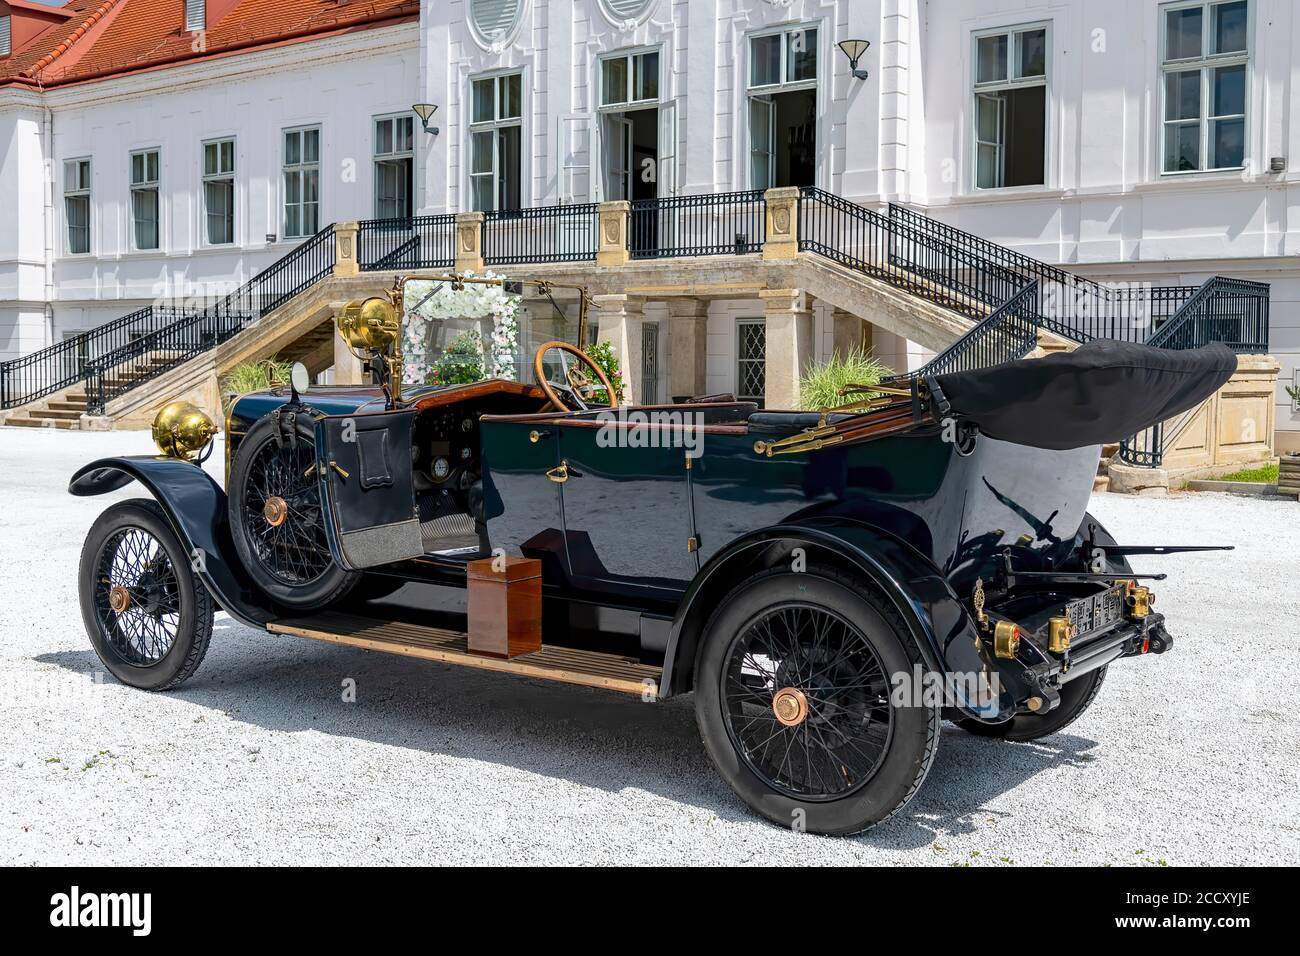 Oldtimer Hispano-Suiza T16, construit en 1917, 4 cylindres, capacité 2950 ccm, puissance 60 ch, max 80 km/h, 4 rapports à l'avant, 1 marche arrière, vue arrière gauche vers l'intérieur Banque D'Images